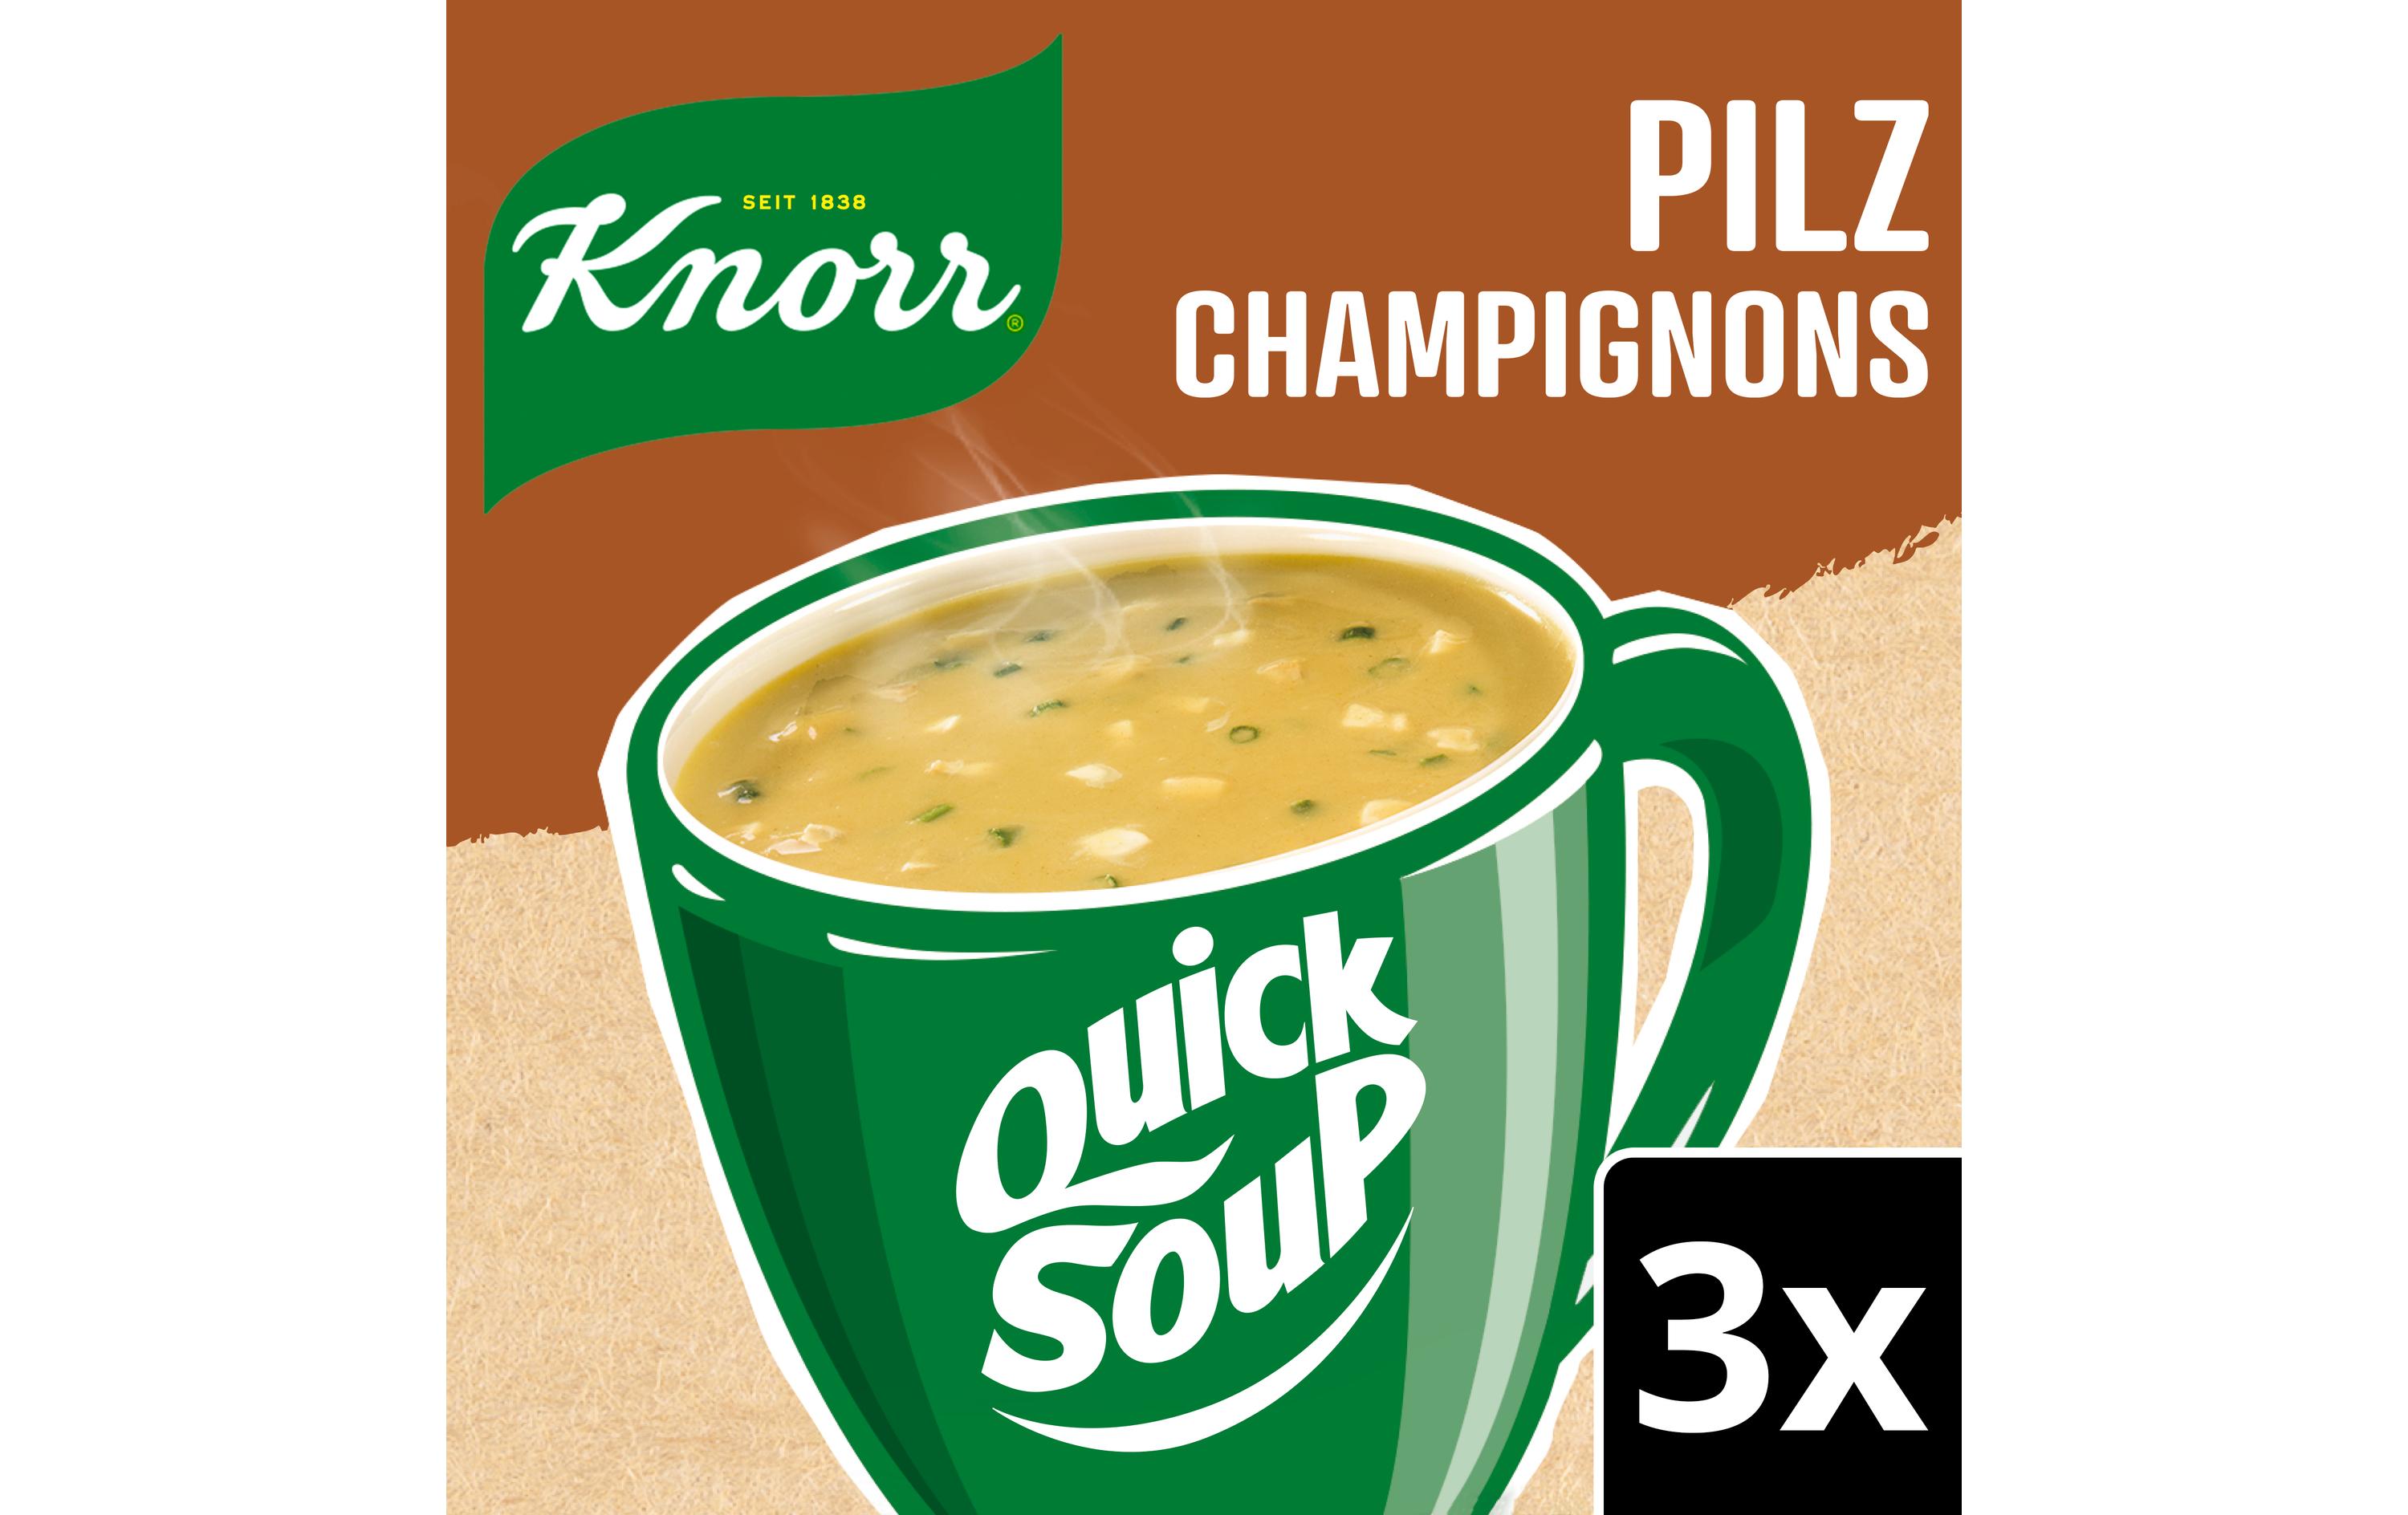 Knorr Quick Soup Pilz 3 Portionen